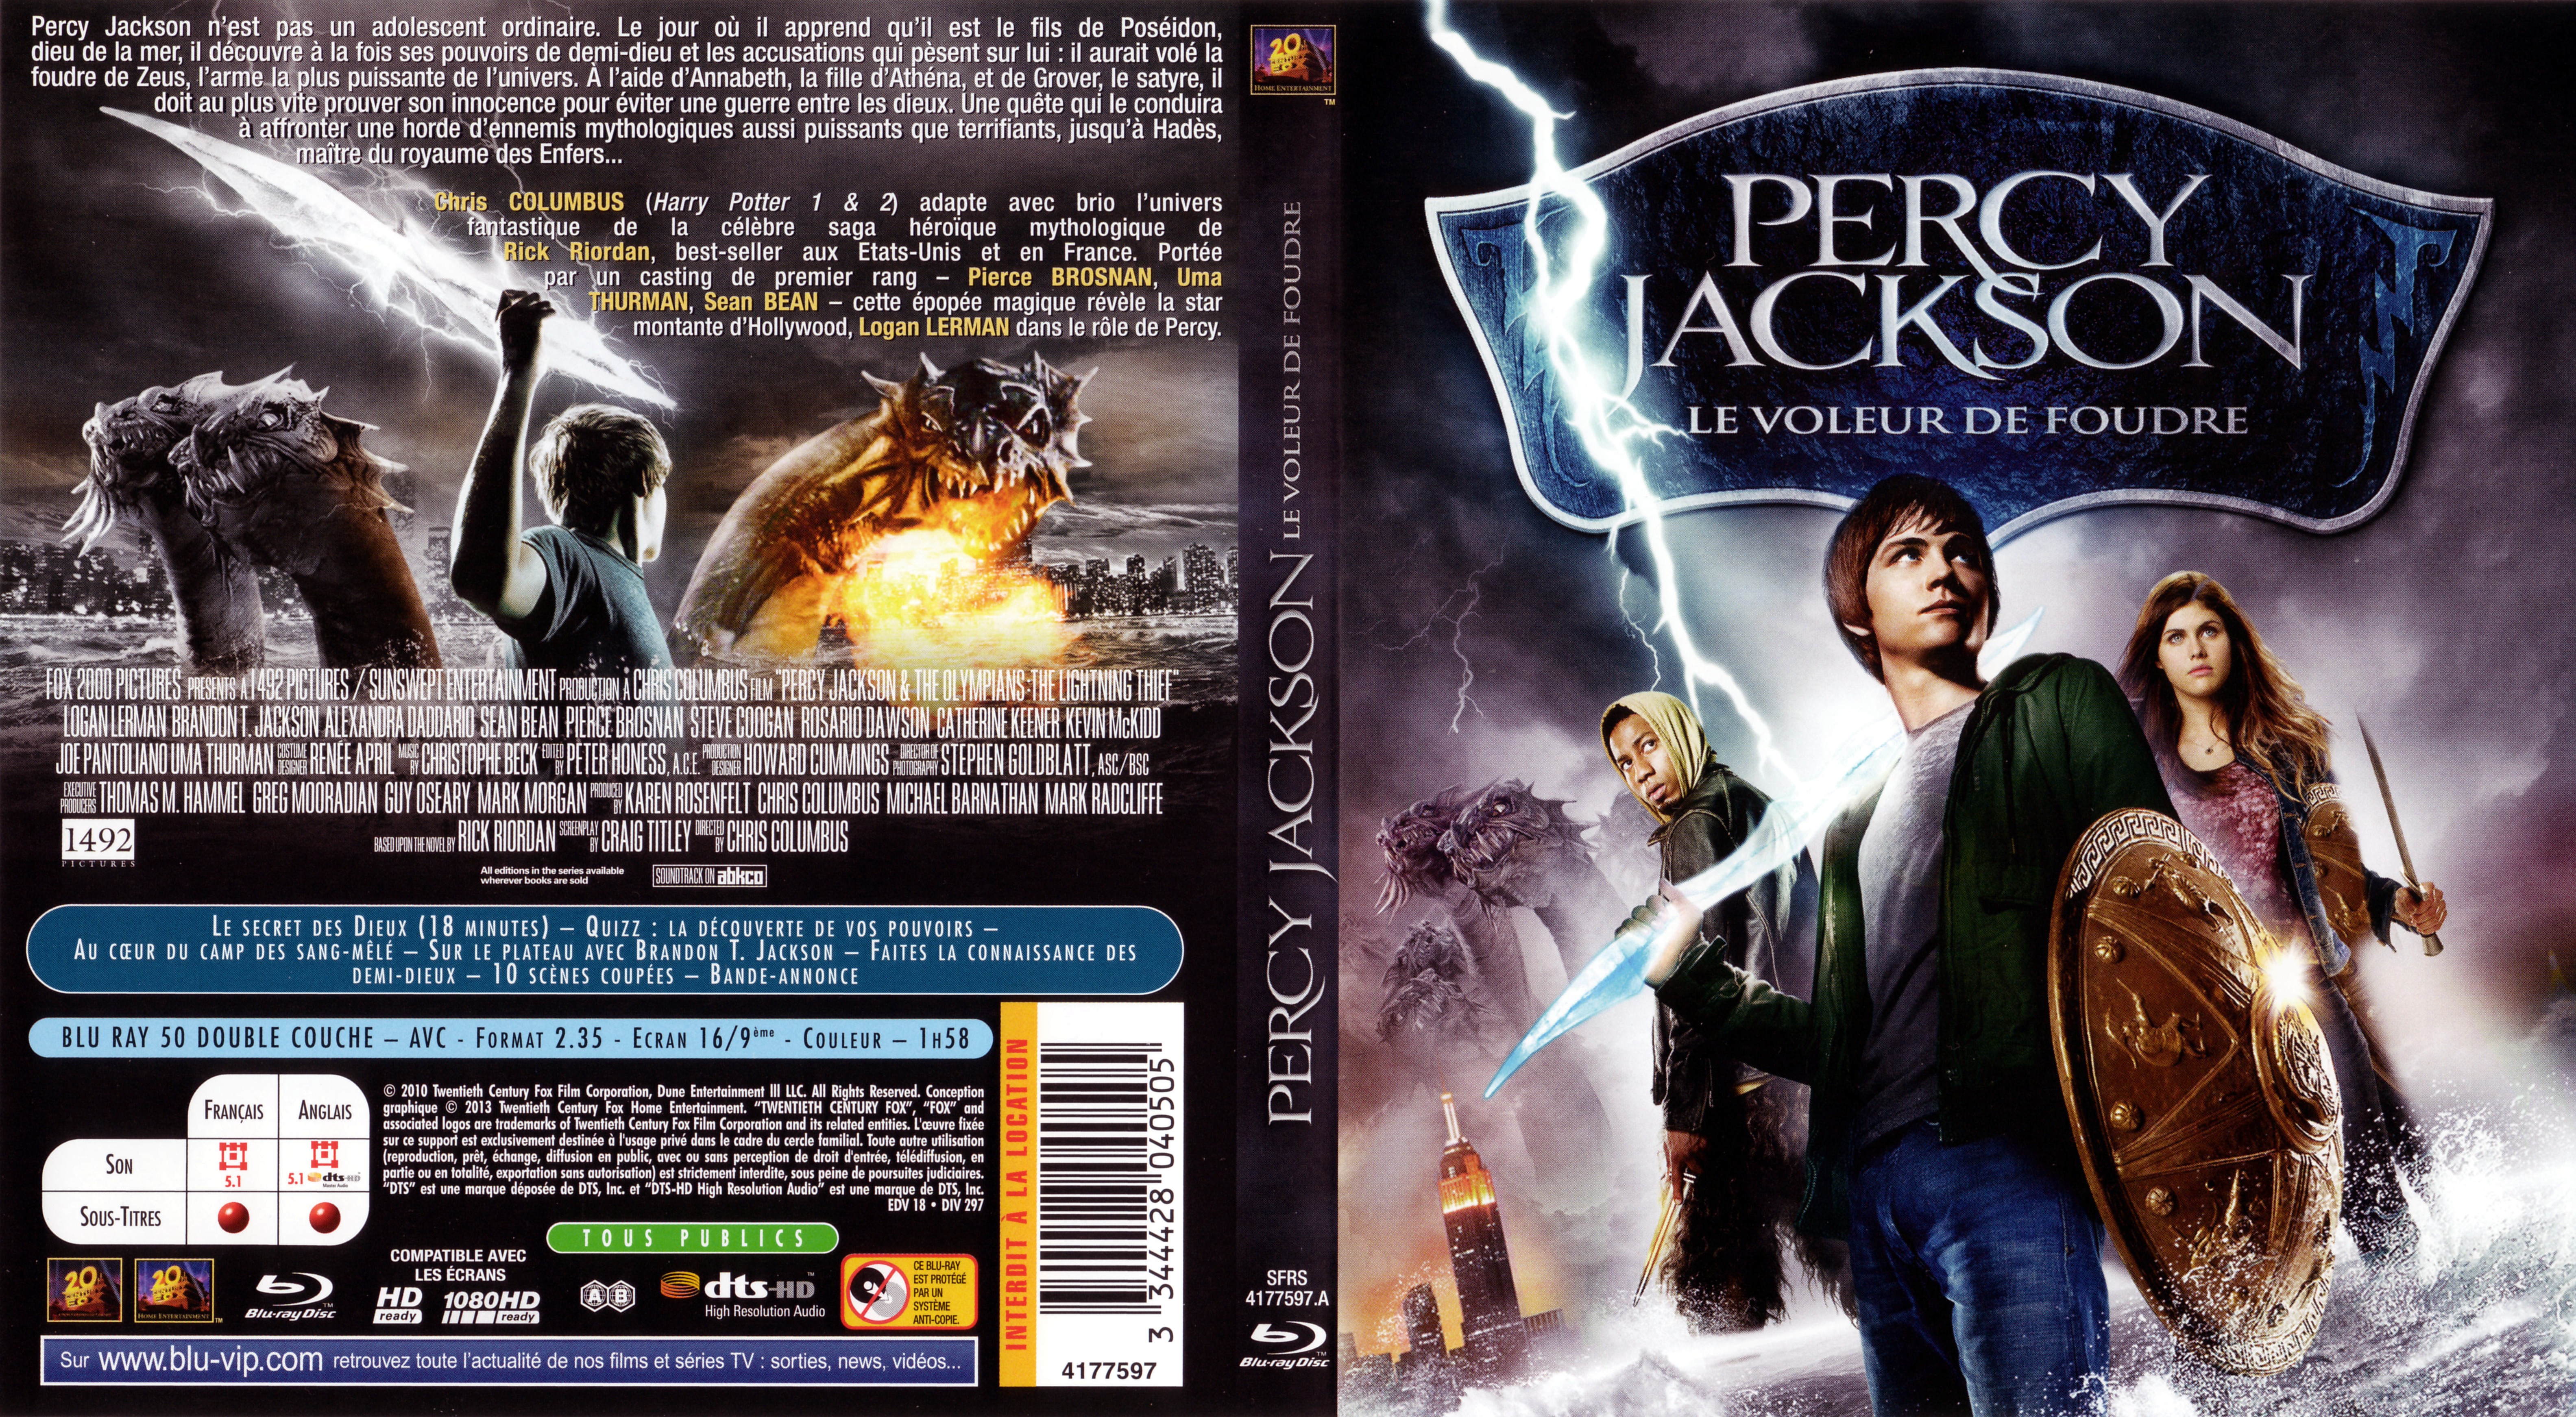 Jaquette DVD Percy Jackson le voleur de foudre (BLU-RAY) v2